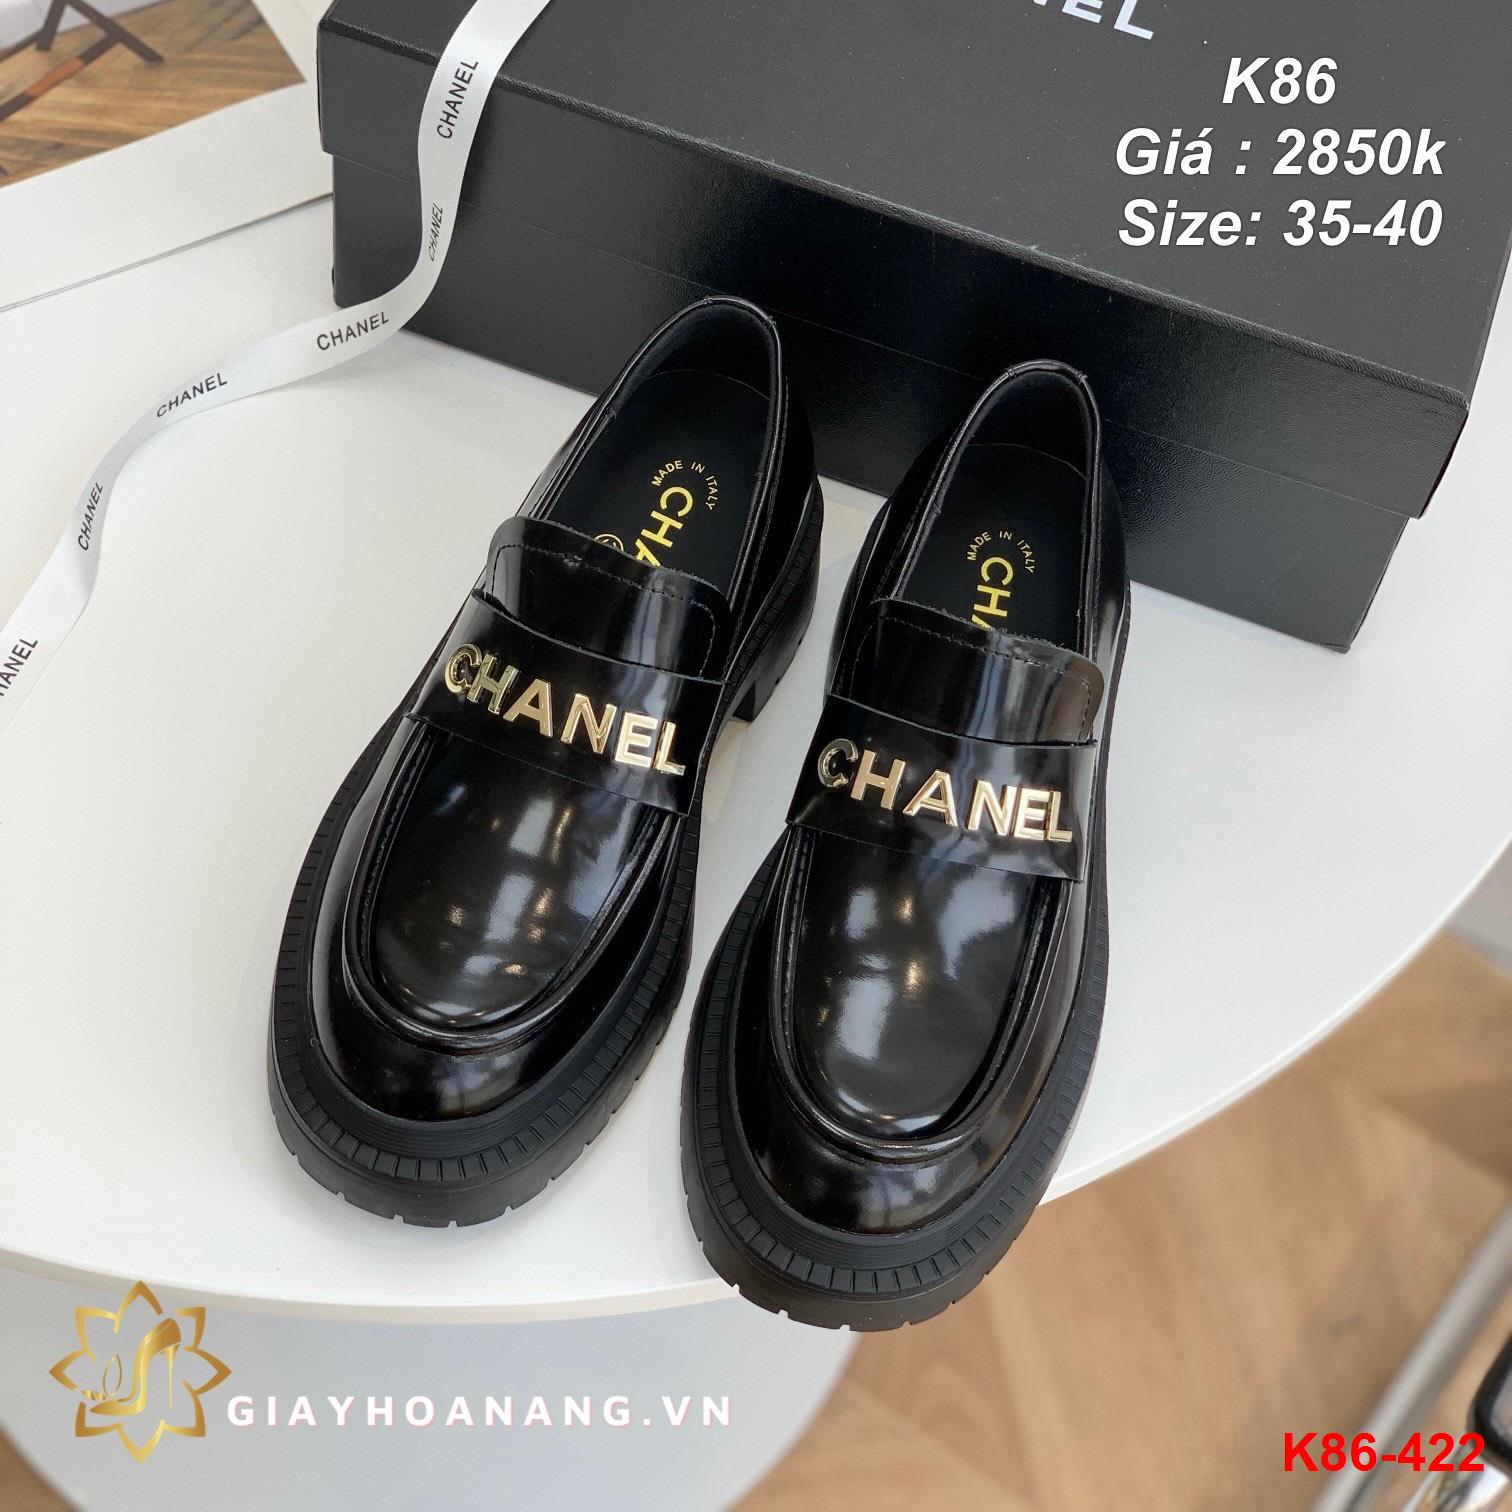 K86-422 Chanel giày lười siêu cấp